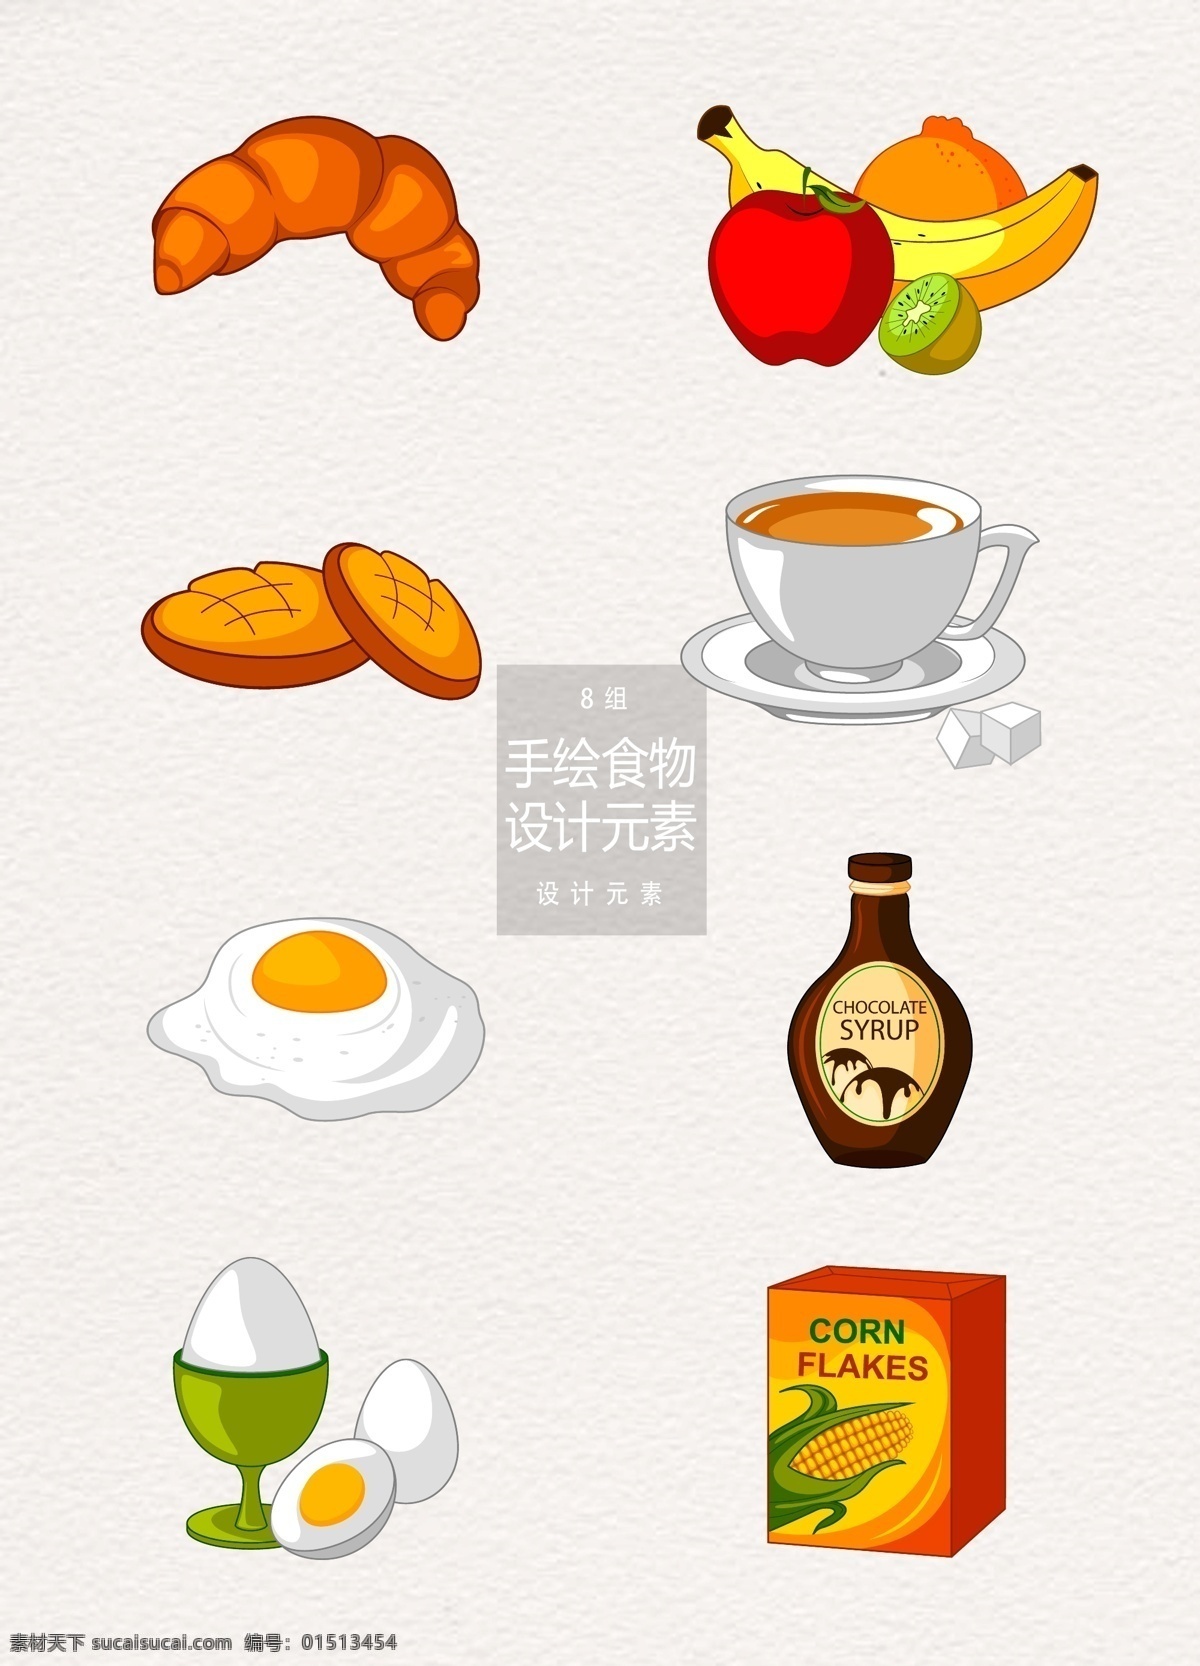 健康食品 早餐 手绘 食物 元素 设计元素 面包 奶茶 饼干 早餐食物 手绘食物 鸡蛋 沙拉酱 水果